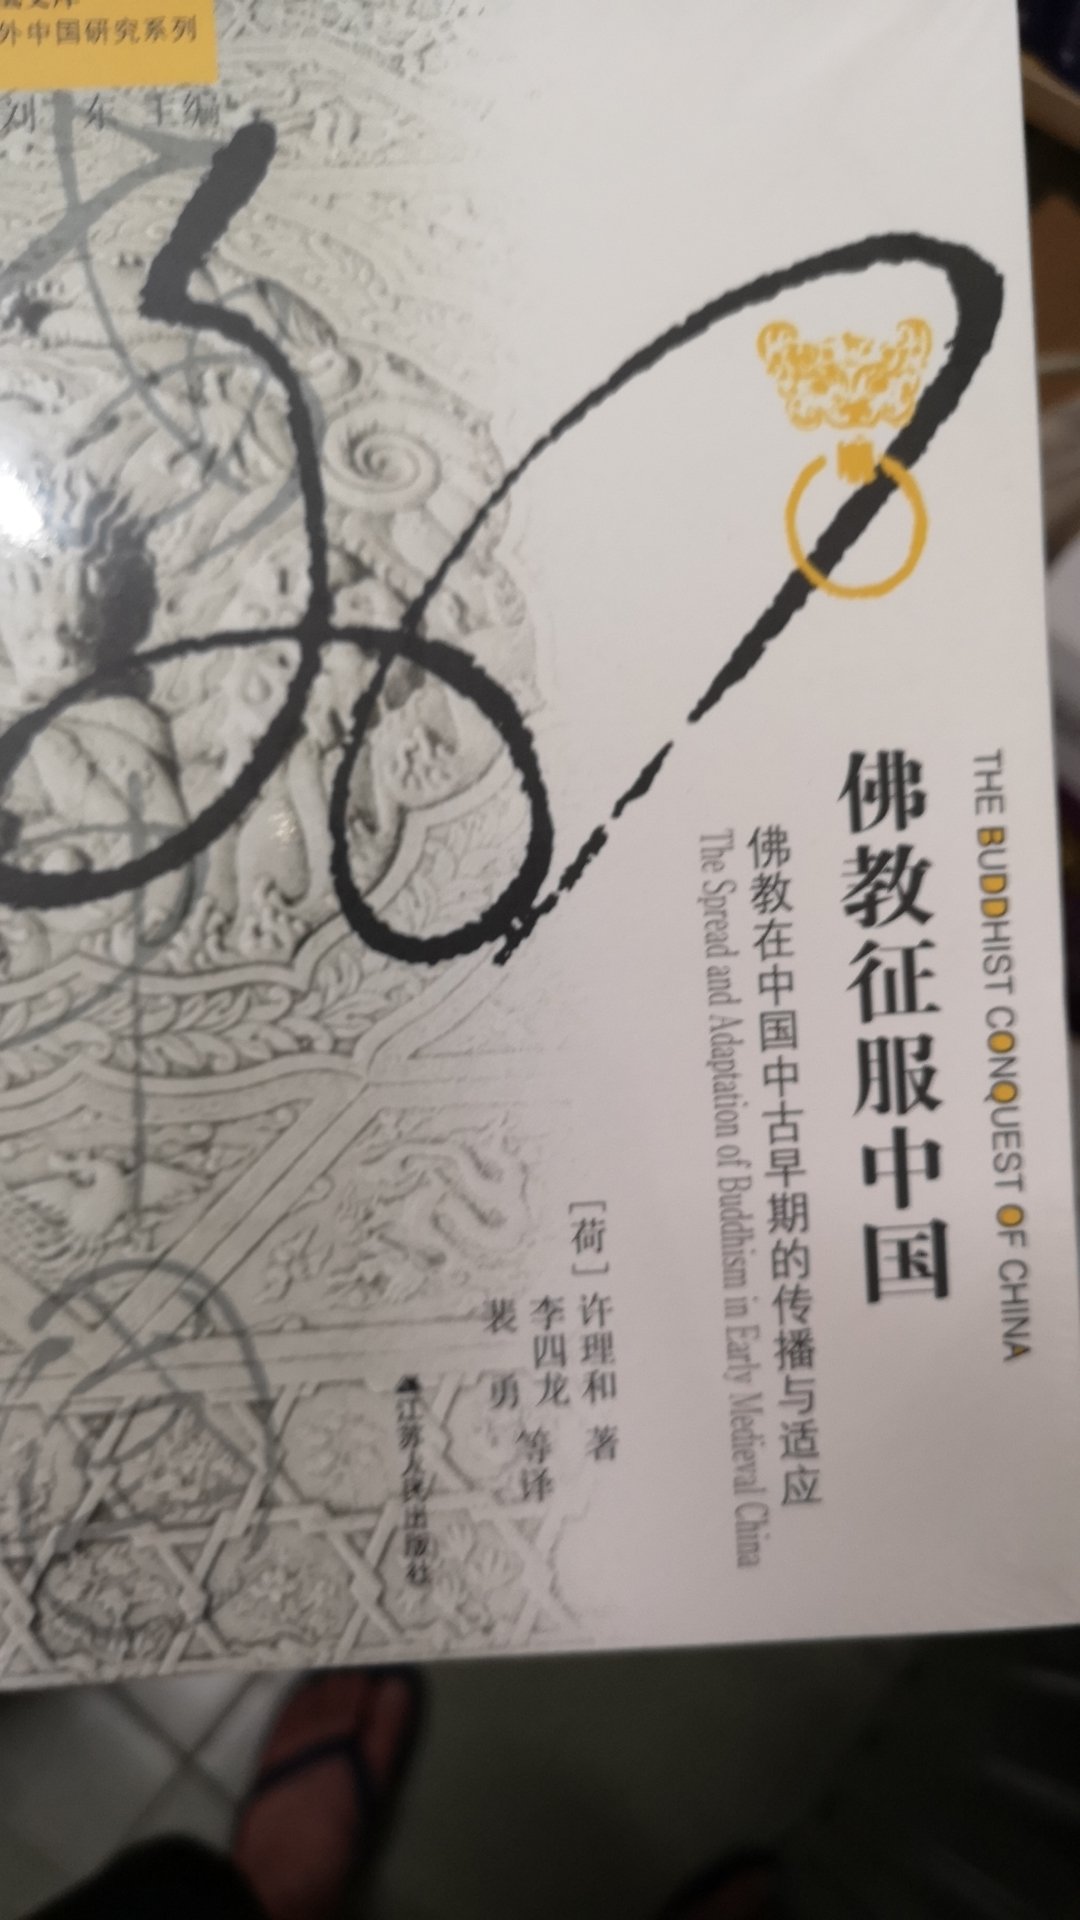 宝贝收到了，海外中国研究系列，特别好的一套书，买了好多本呢，一定要好好拜读。嘻嘻。推荐给大家哦！哈哈哈哈哈哈?